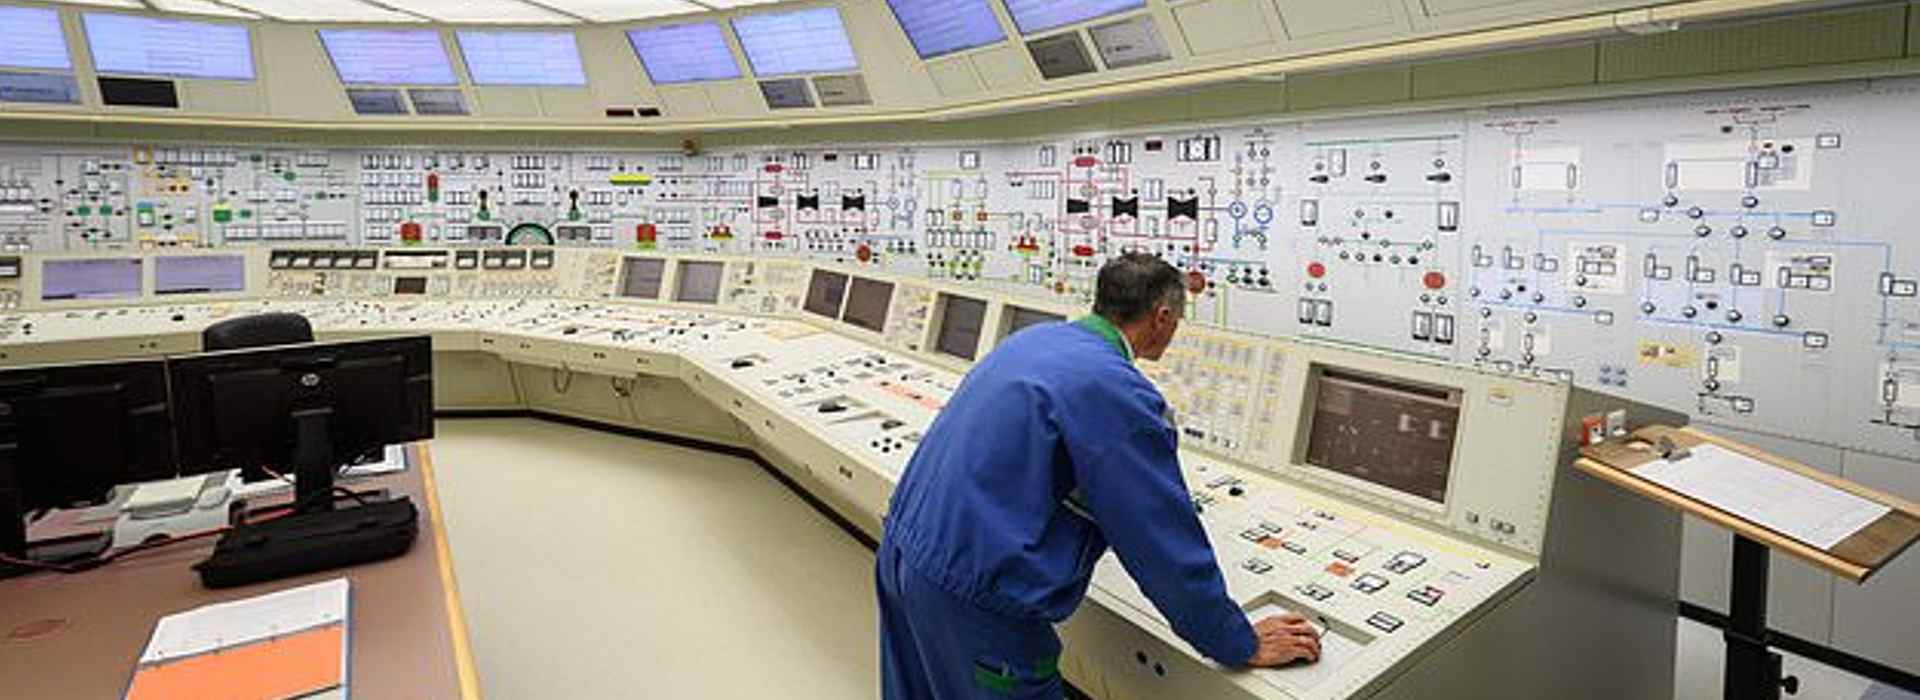 Nucleare: la Gran Bretagna avvia il processo di approvazione per il mini reattore Rolls-Royce